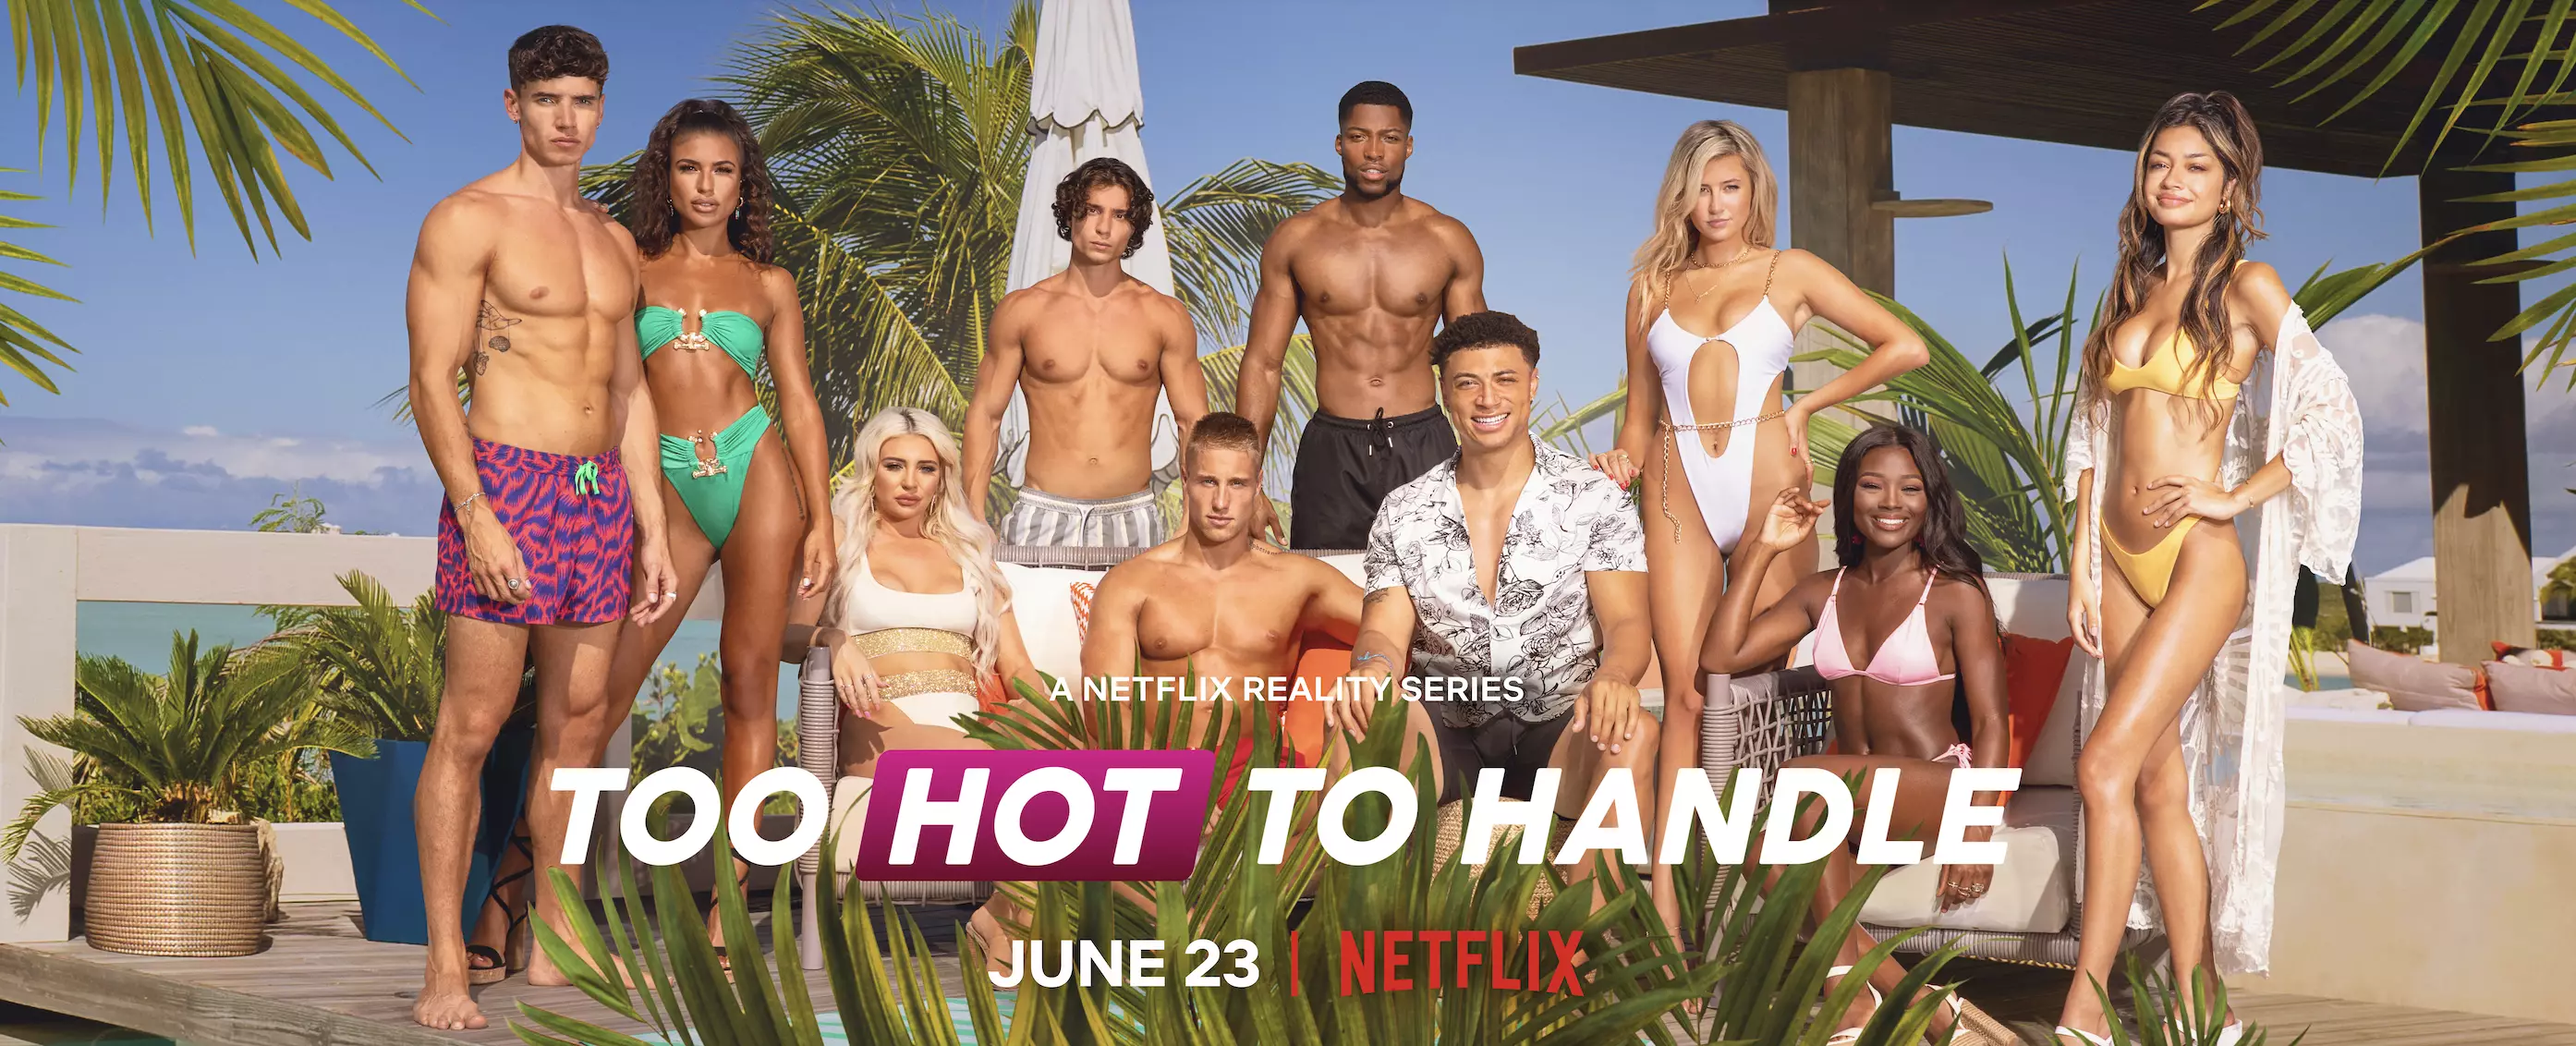 Too Hot To Handle season 2 (